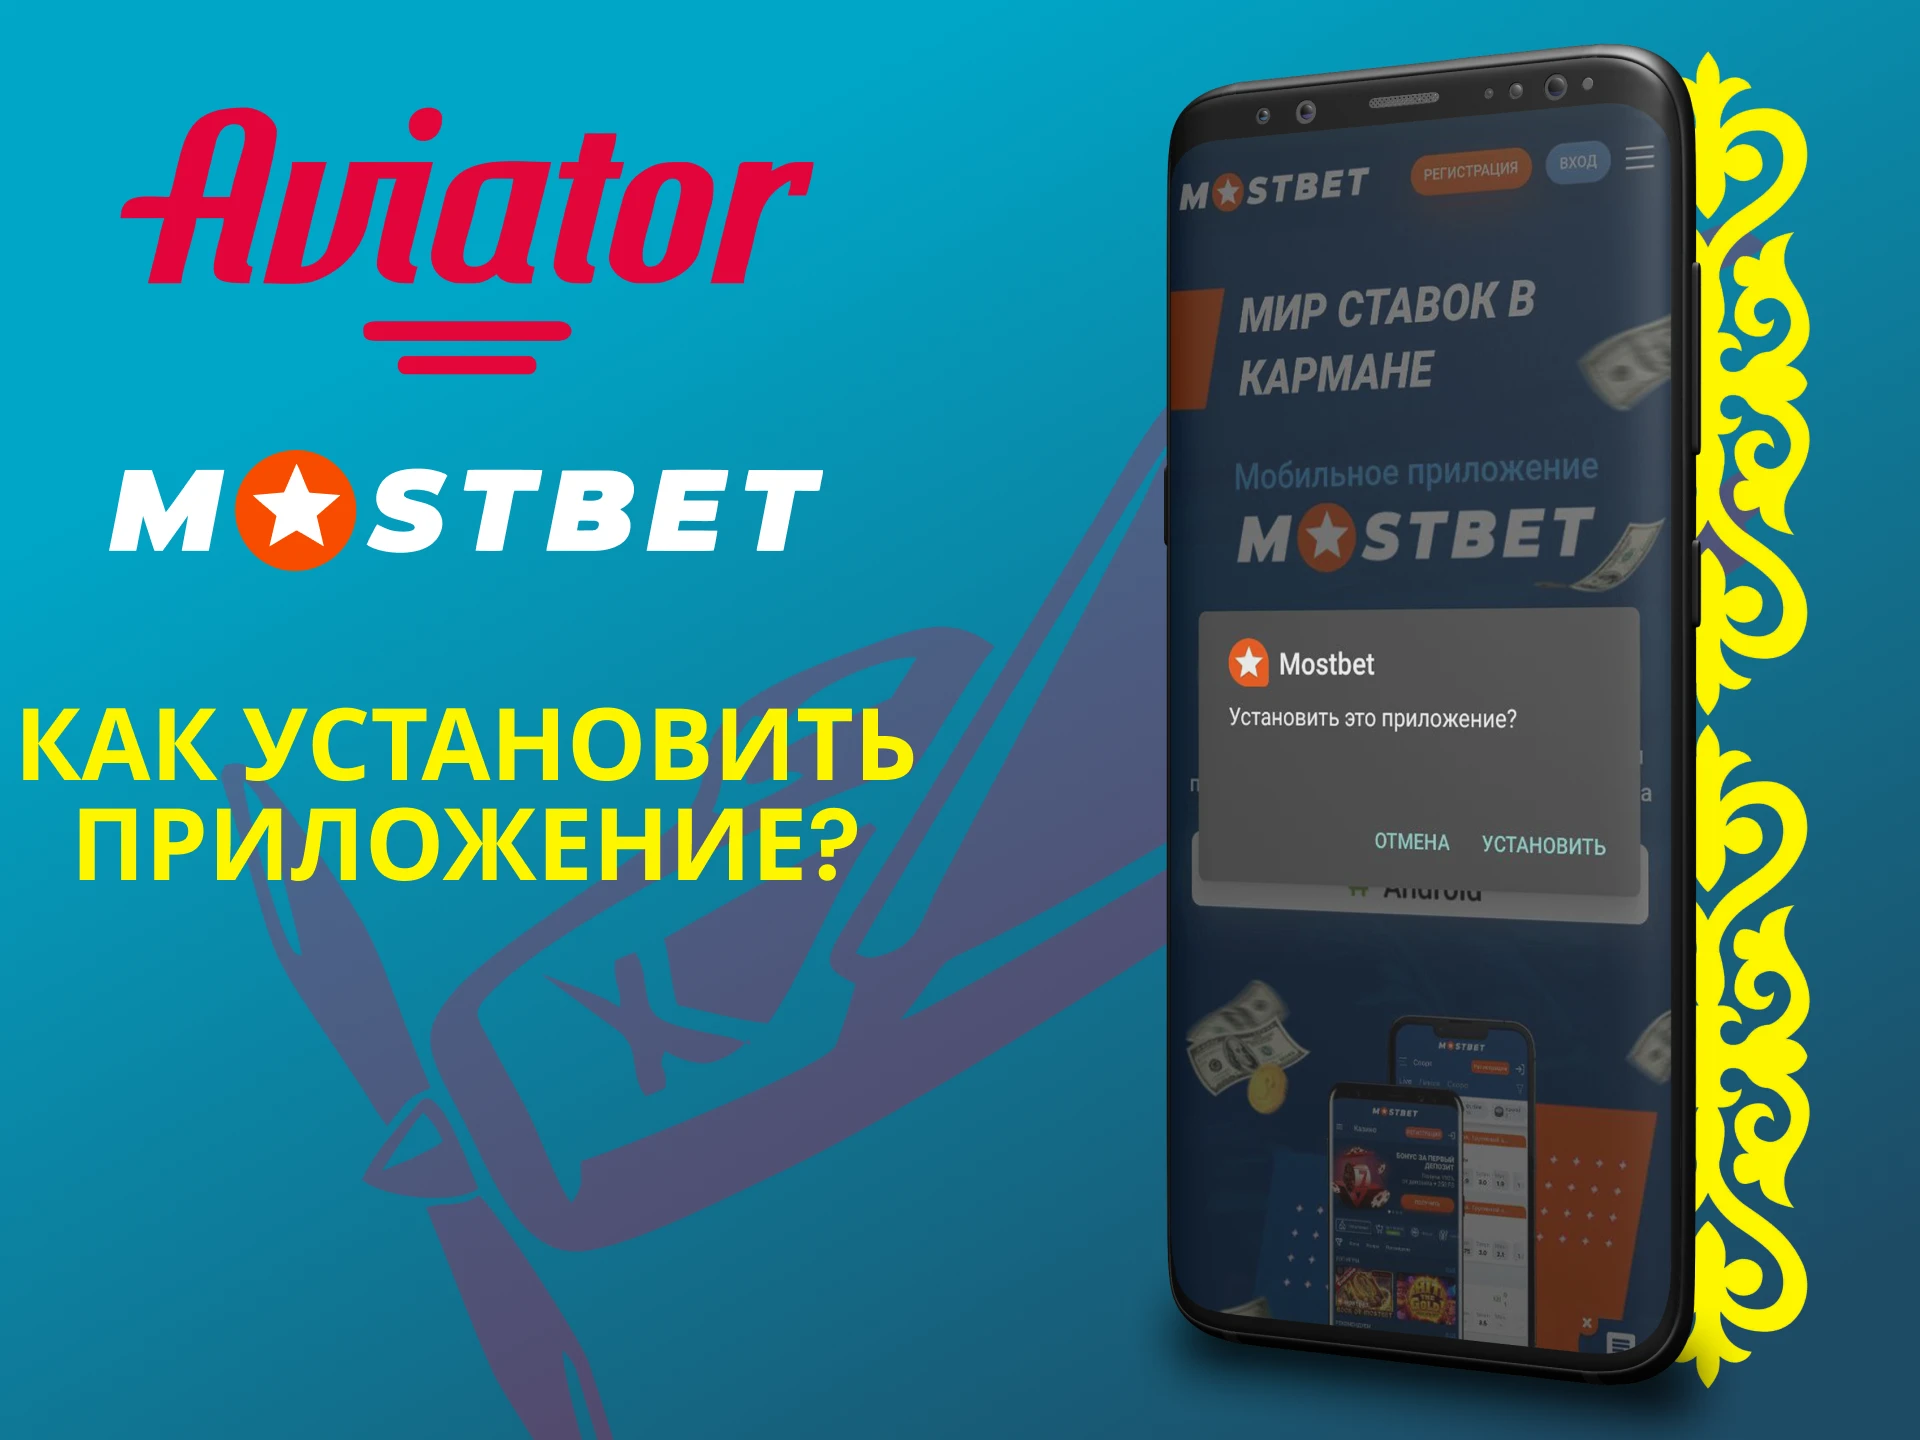 Мы покажем как установить приложение Mostbet для игры в Авиатор.